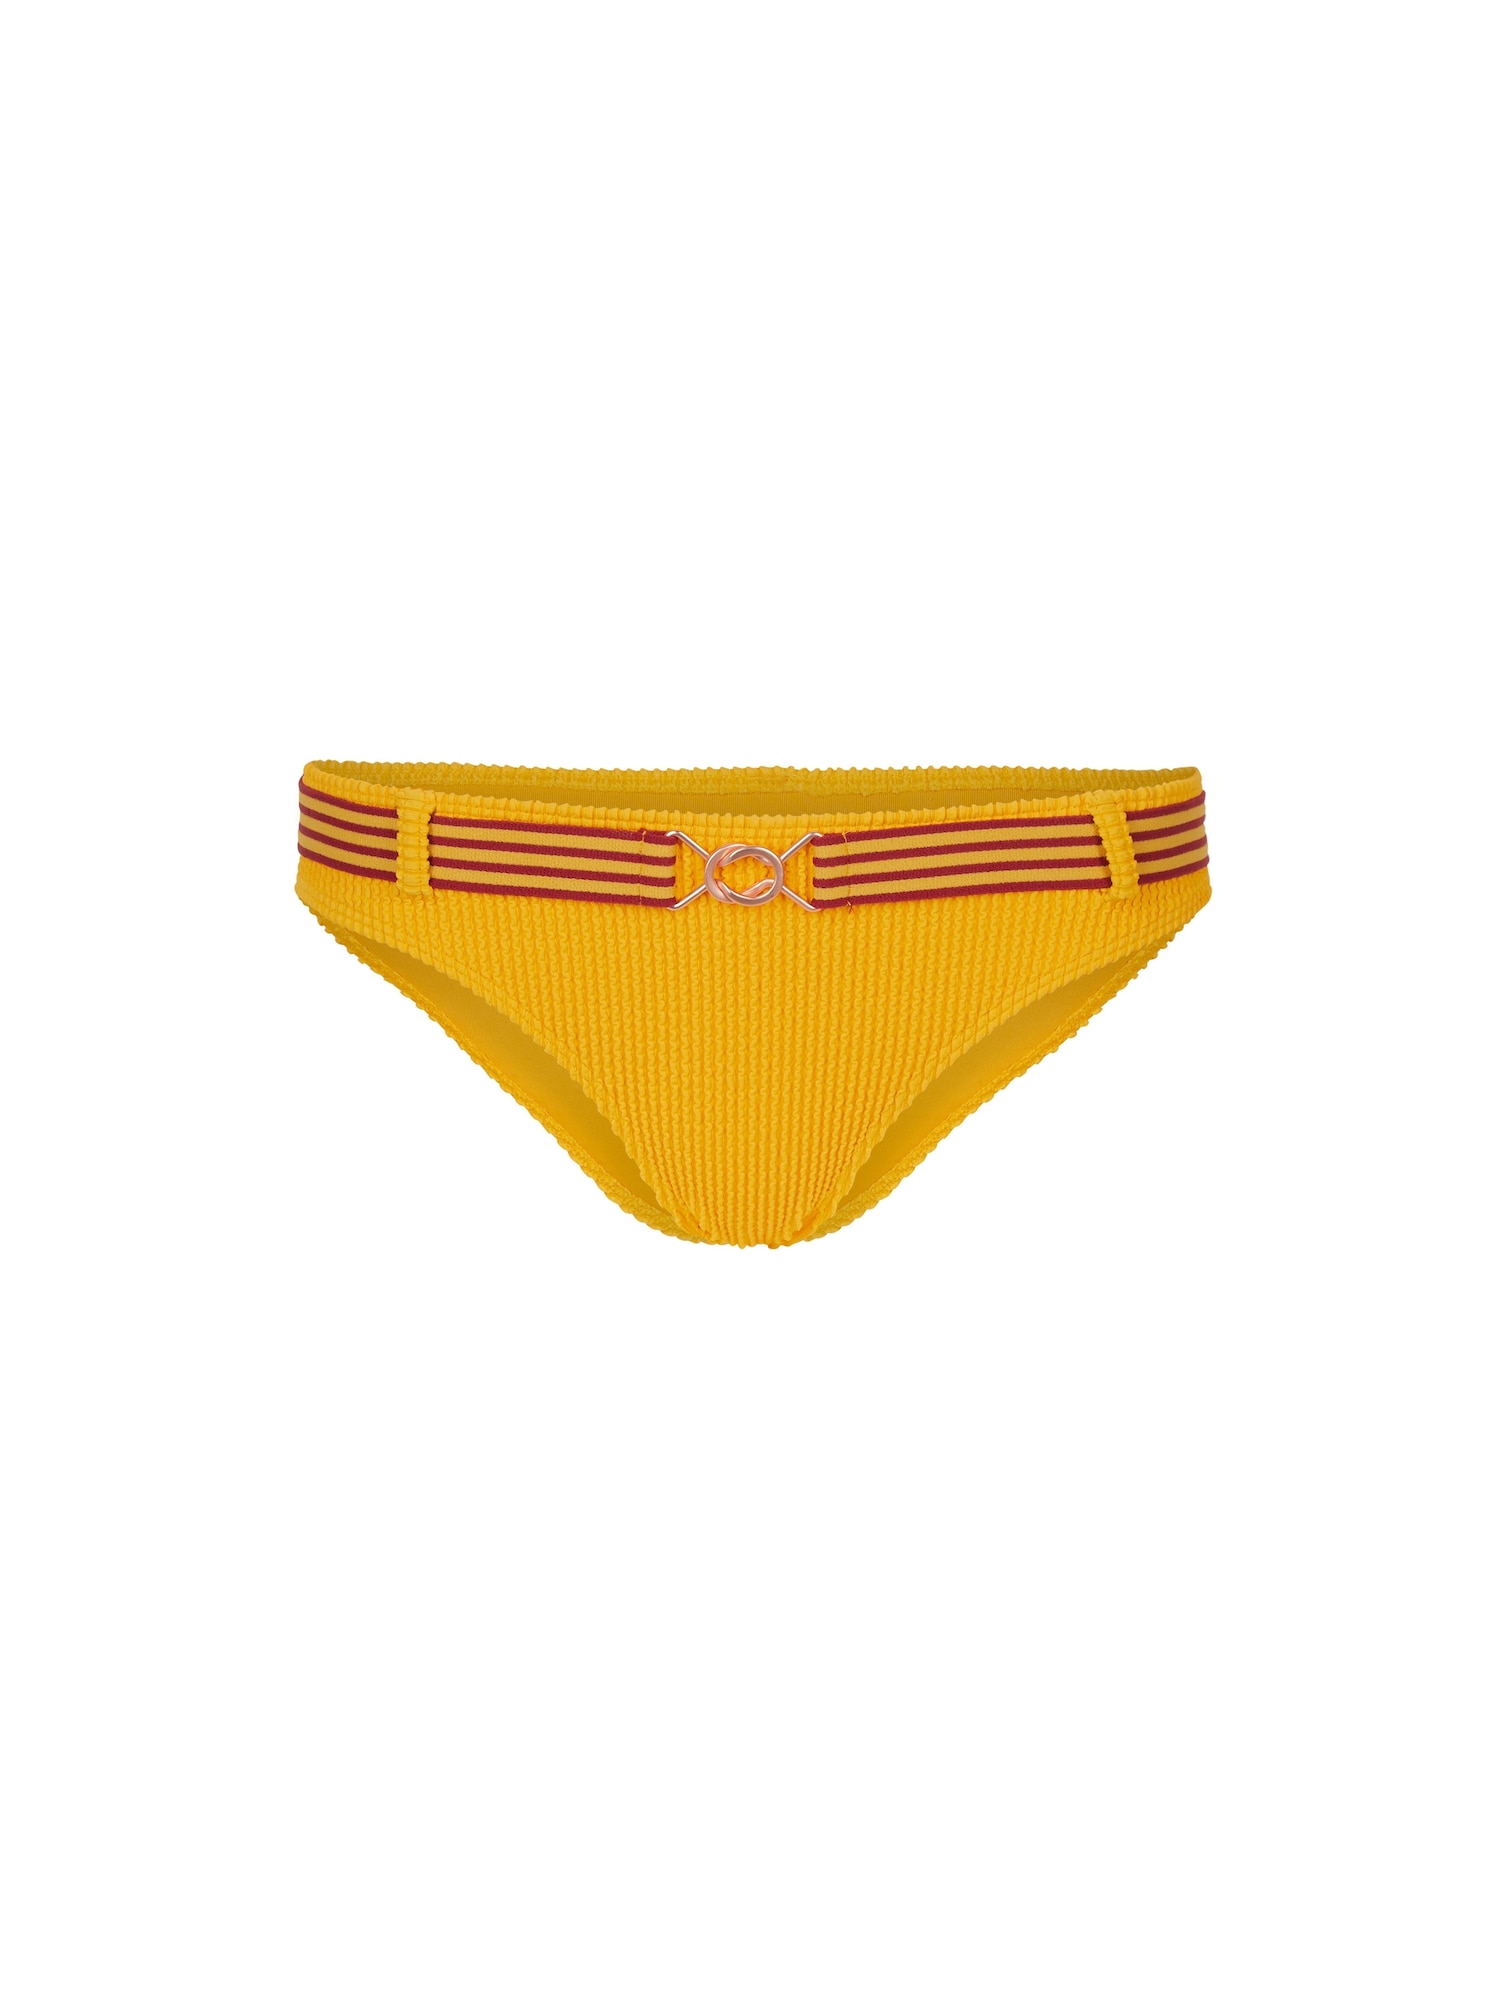 O'NEILL Bikinio kelnaitės 'Sassy Cruz' aukso geltonumo spalva / auksas / skaisti avietinė ar rubino spalva